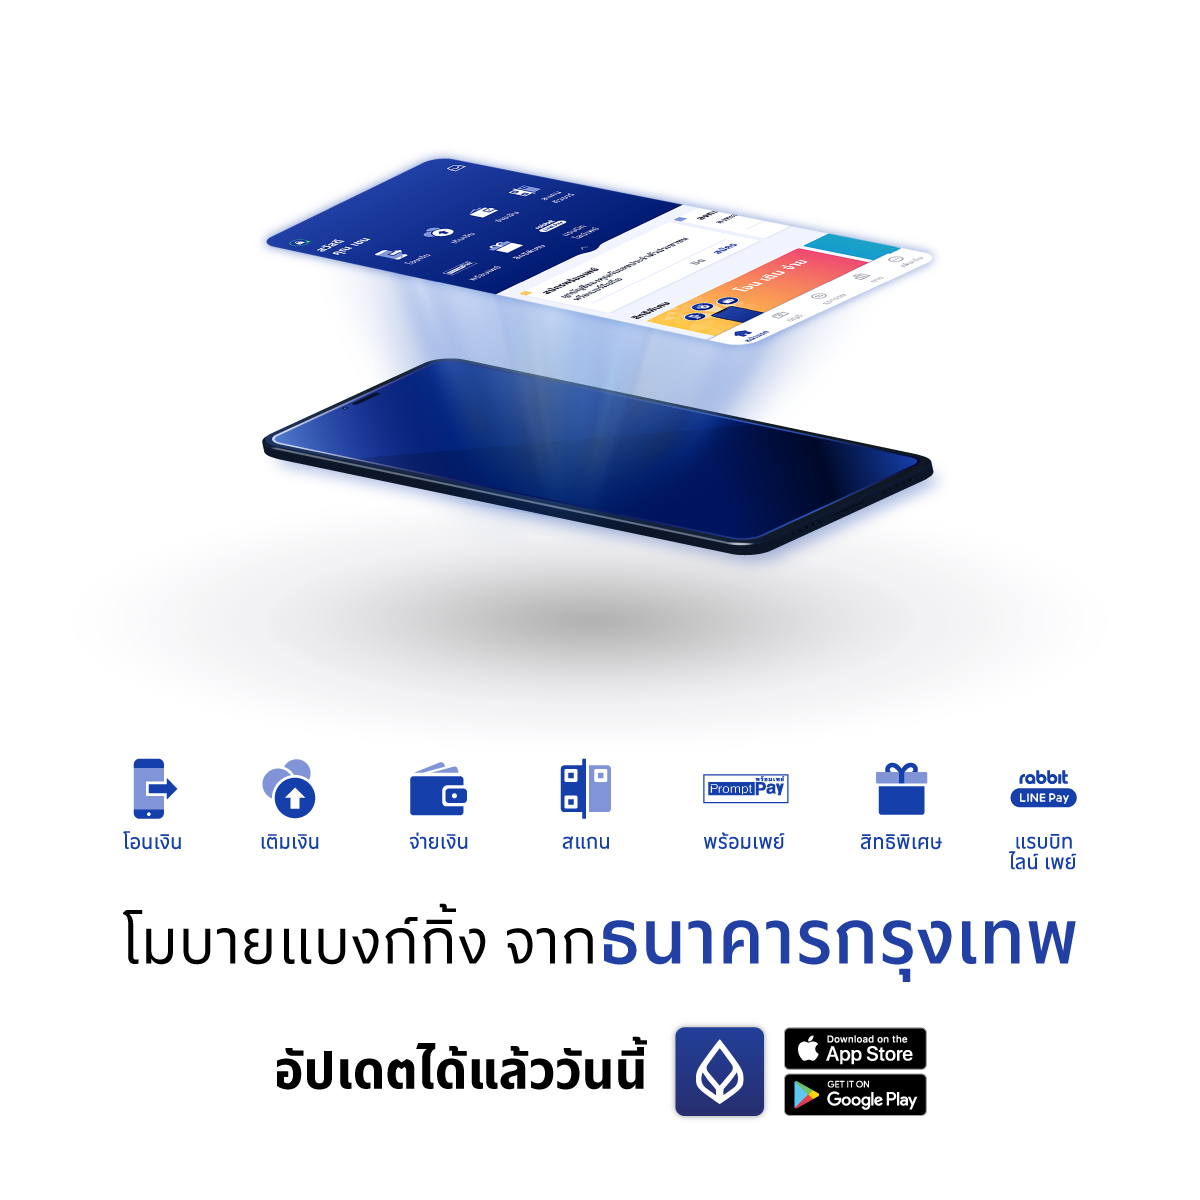 ธนาคารกรุงเทพ เปิดตัว Bangkok Bank Mobile Banking ปรับดีไซน์ พร้อมเพิ่มฟีเจอร์ใหม่ ใช้งานง่าย สะดวกมากขึ้น ตอบโจทย์ธุรกรรมการเงินยุค New Normal